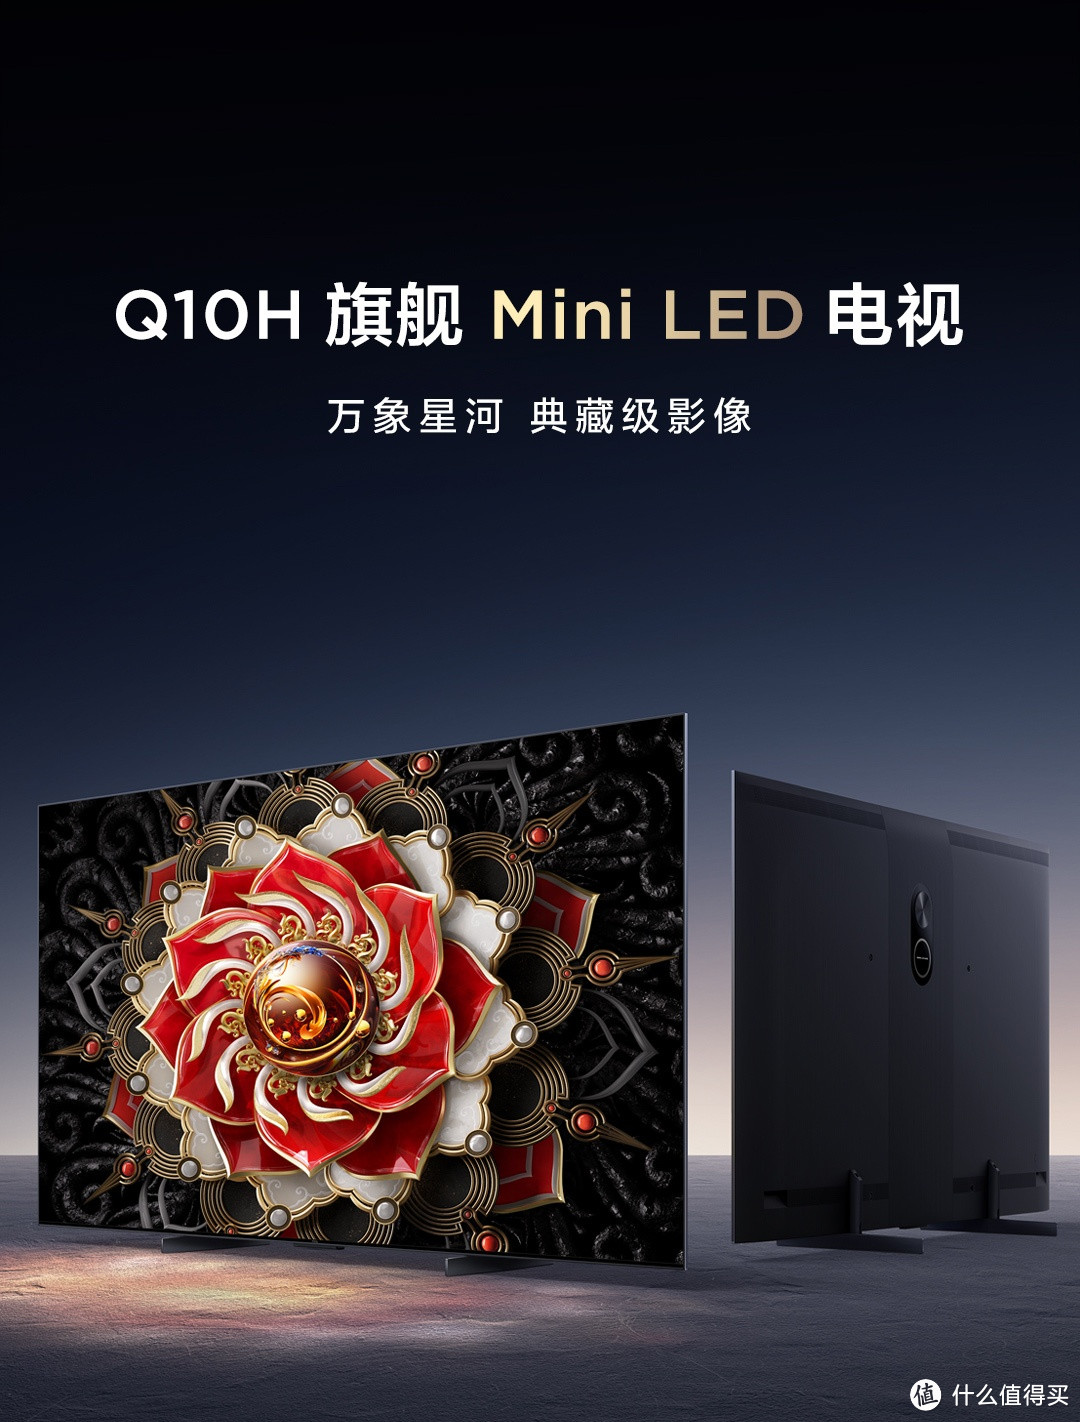 拥抱家庭影院新体验，选TCL Q10H旗舰Mini LED电视